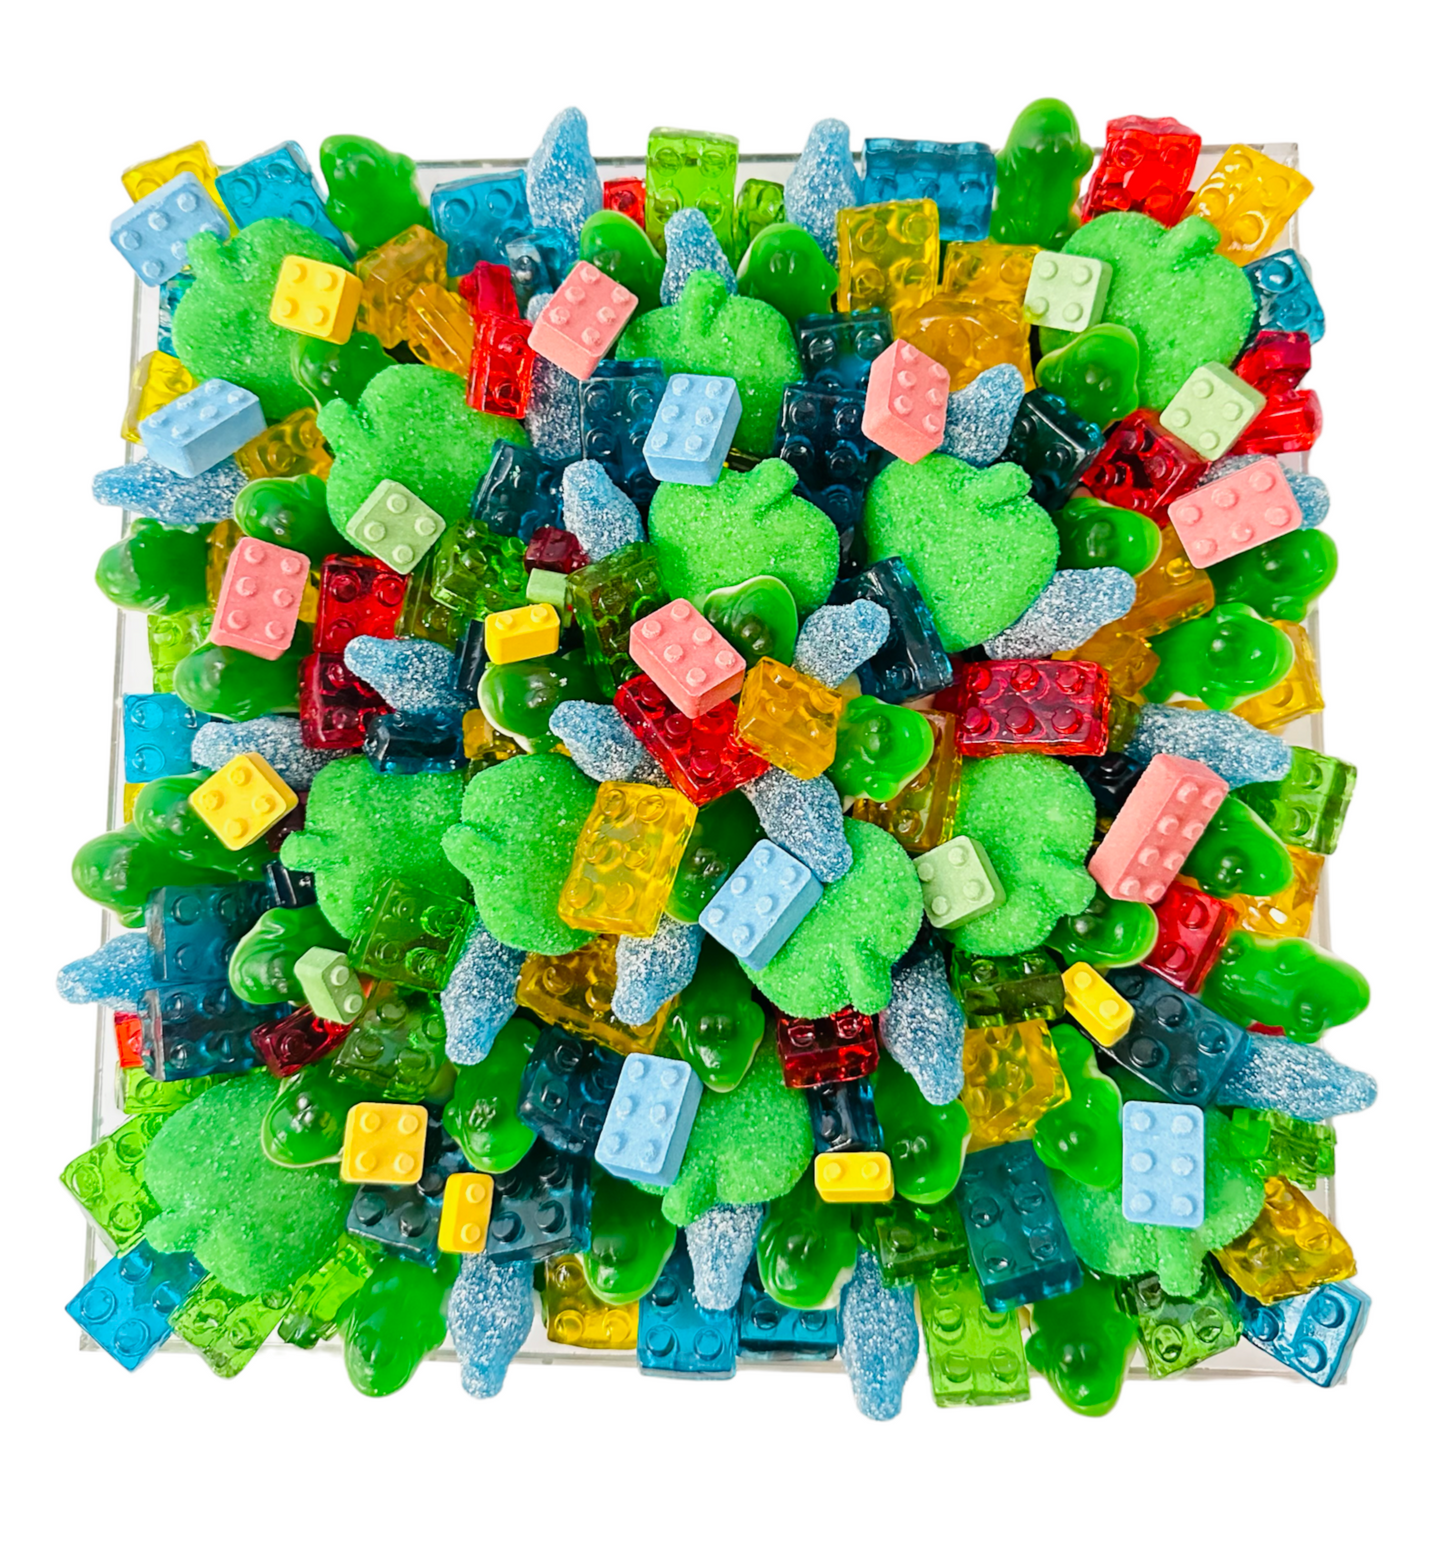 Lego Candy Board